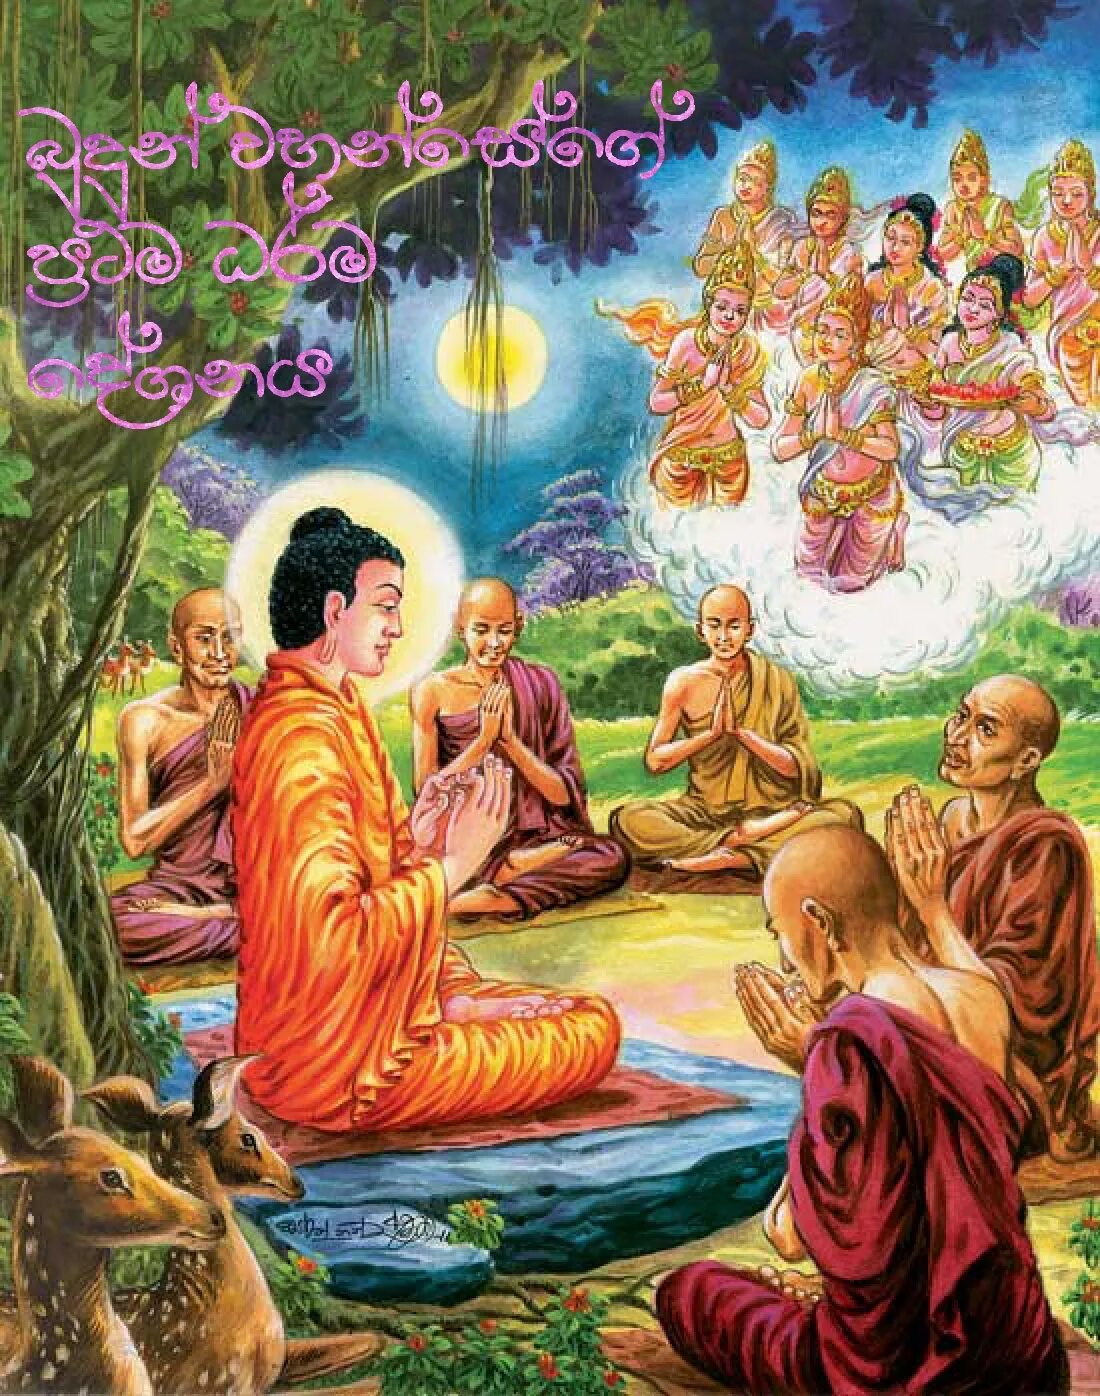 Проповедь будды. Будда Гаутама. 4 Истины буддизма. Четыре благородные истины Будды. Будда Гаутама Шакьямуни с учениками.